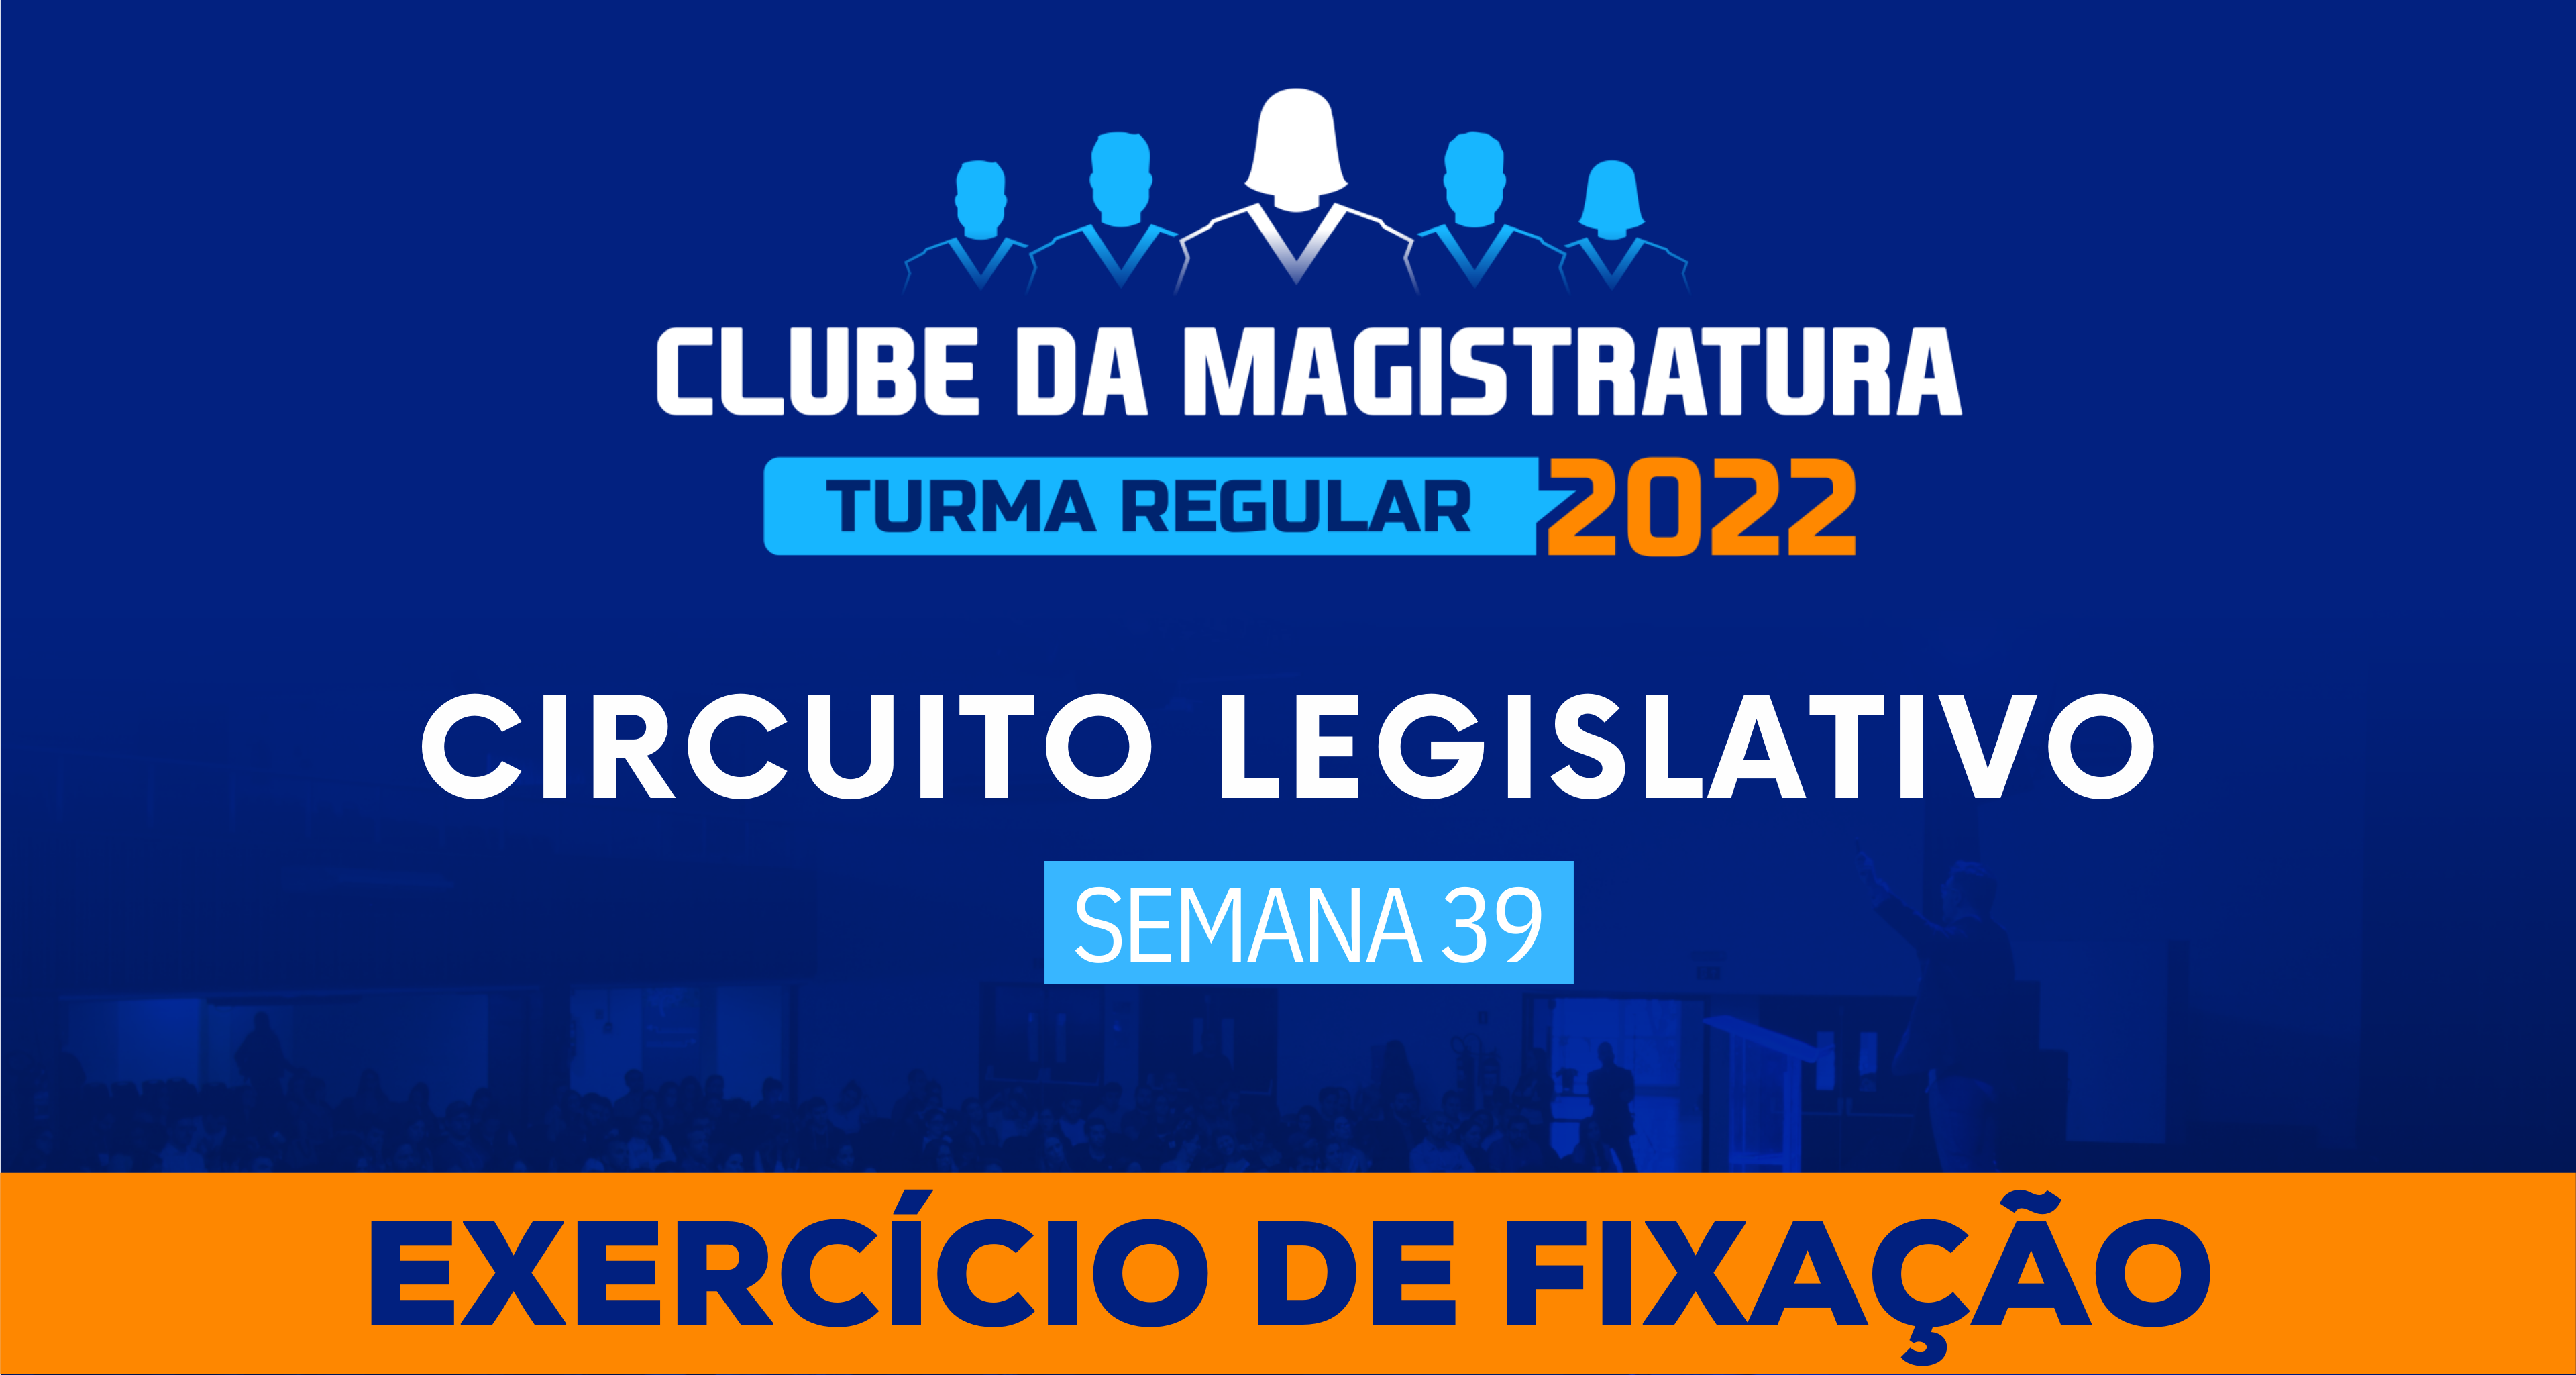 Circuito Legislativo 2022.1 (Clube da Magistratura - Semana 39)